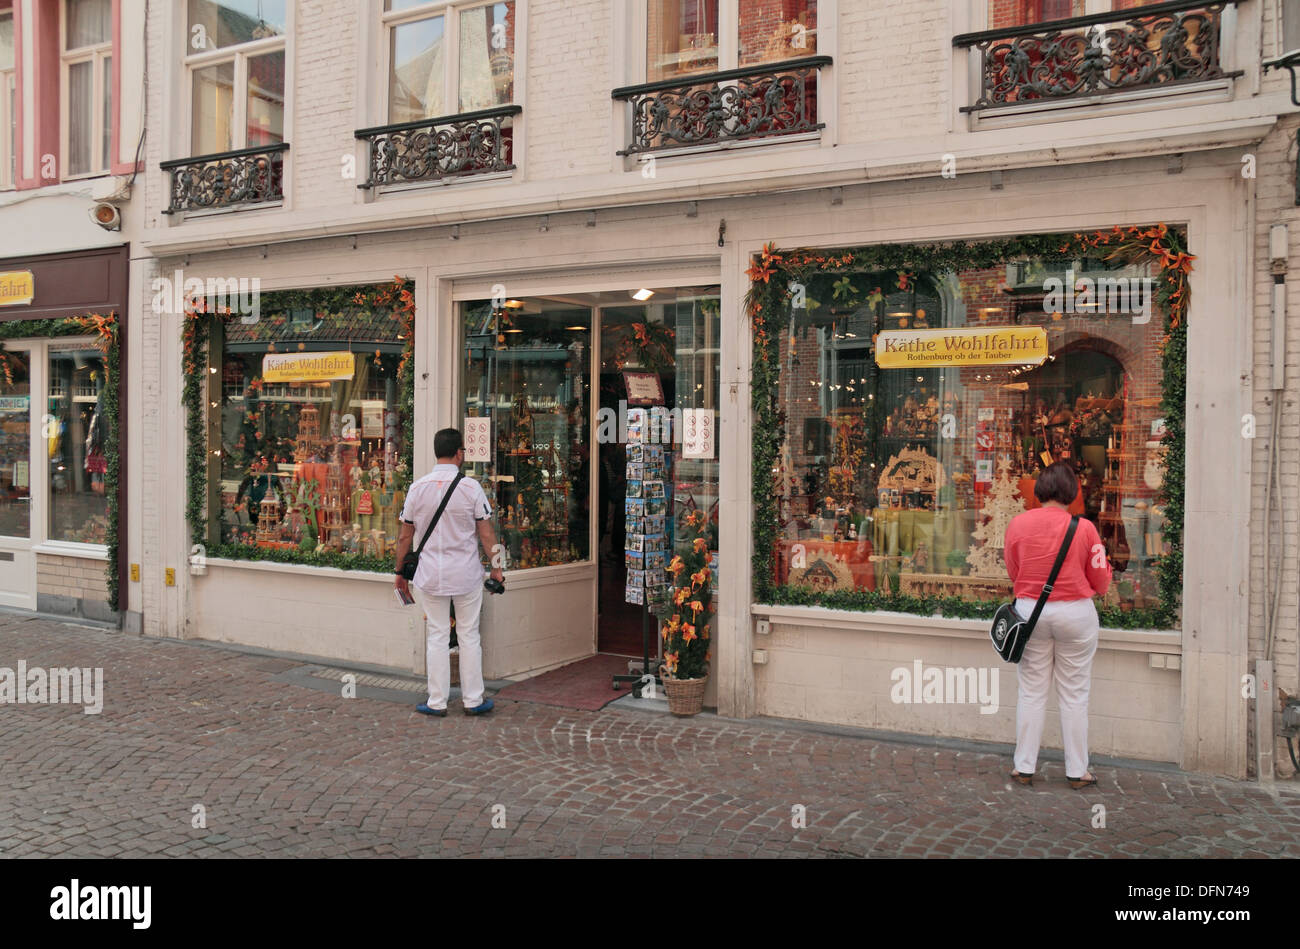 Käthe Wohlfahrt, une boutique de Noël traditionnel allemand dans le quartier historique de Bruges (Brugge), Flandre occidentale, Belgique. Banque D'Images